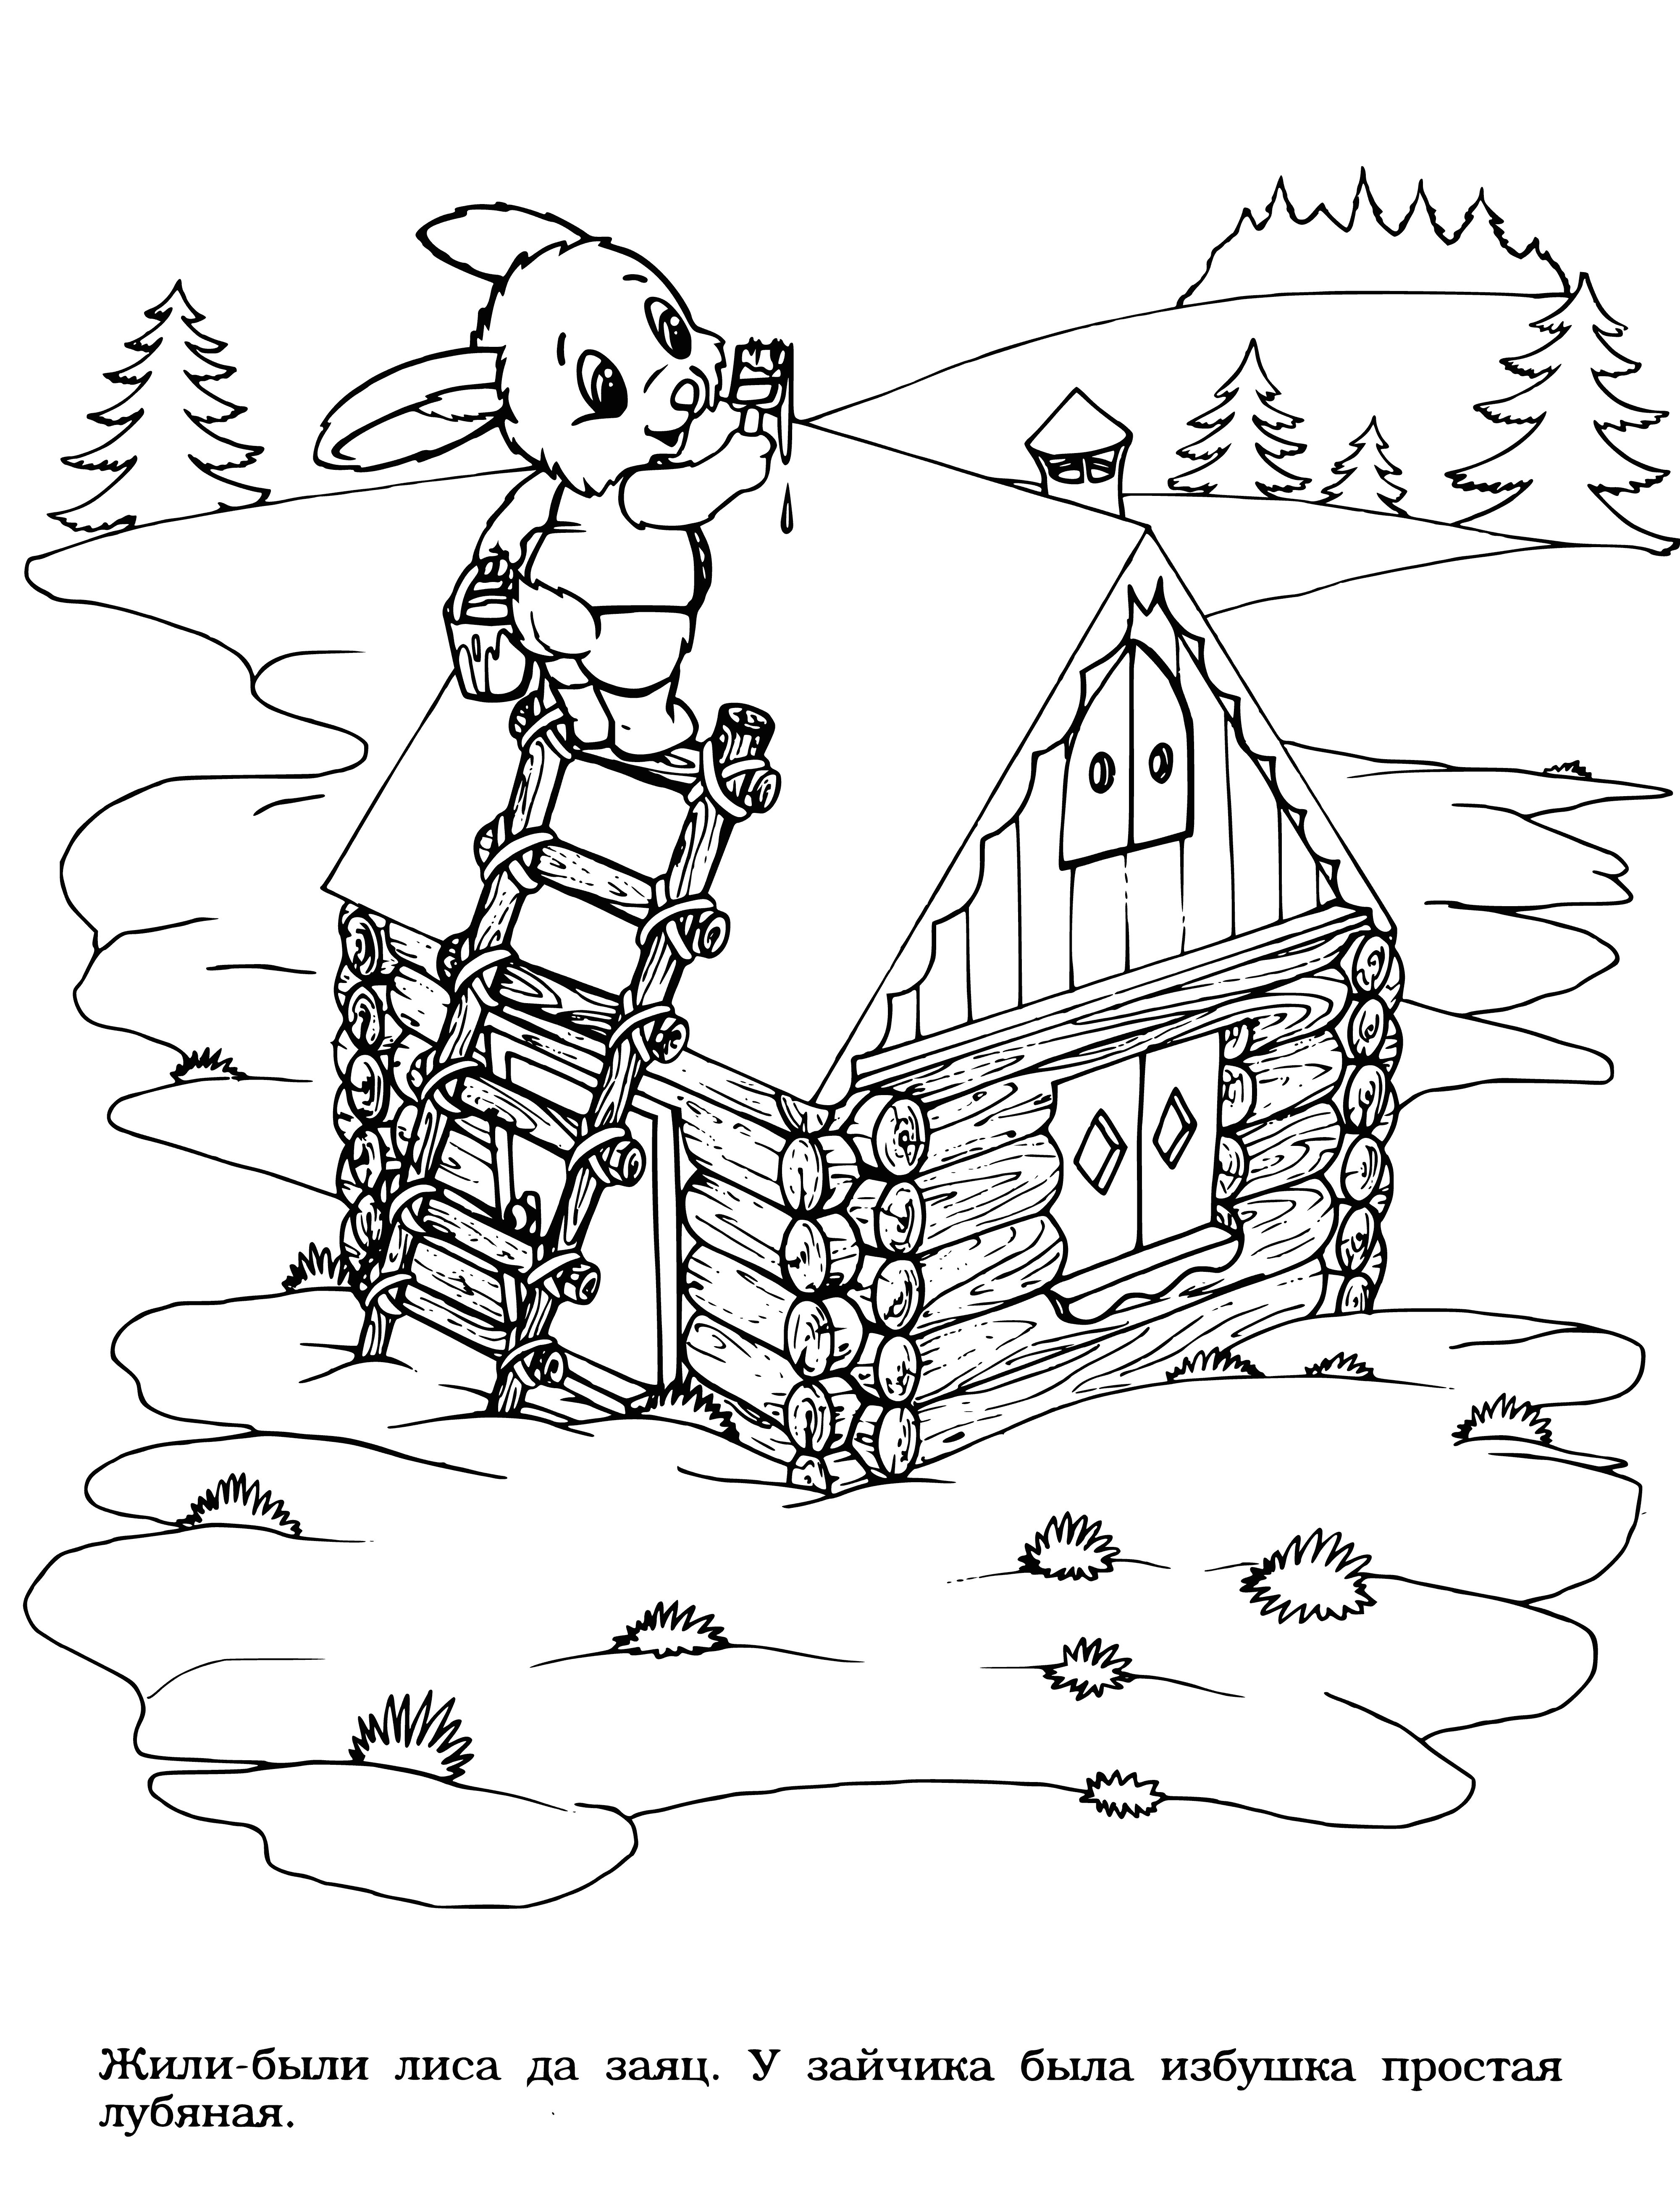 Bunny costruisce una capanna di rafia pagina da colorare